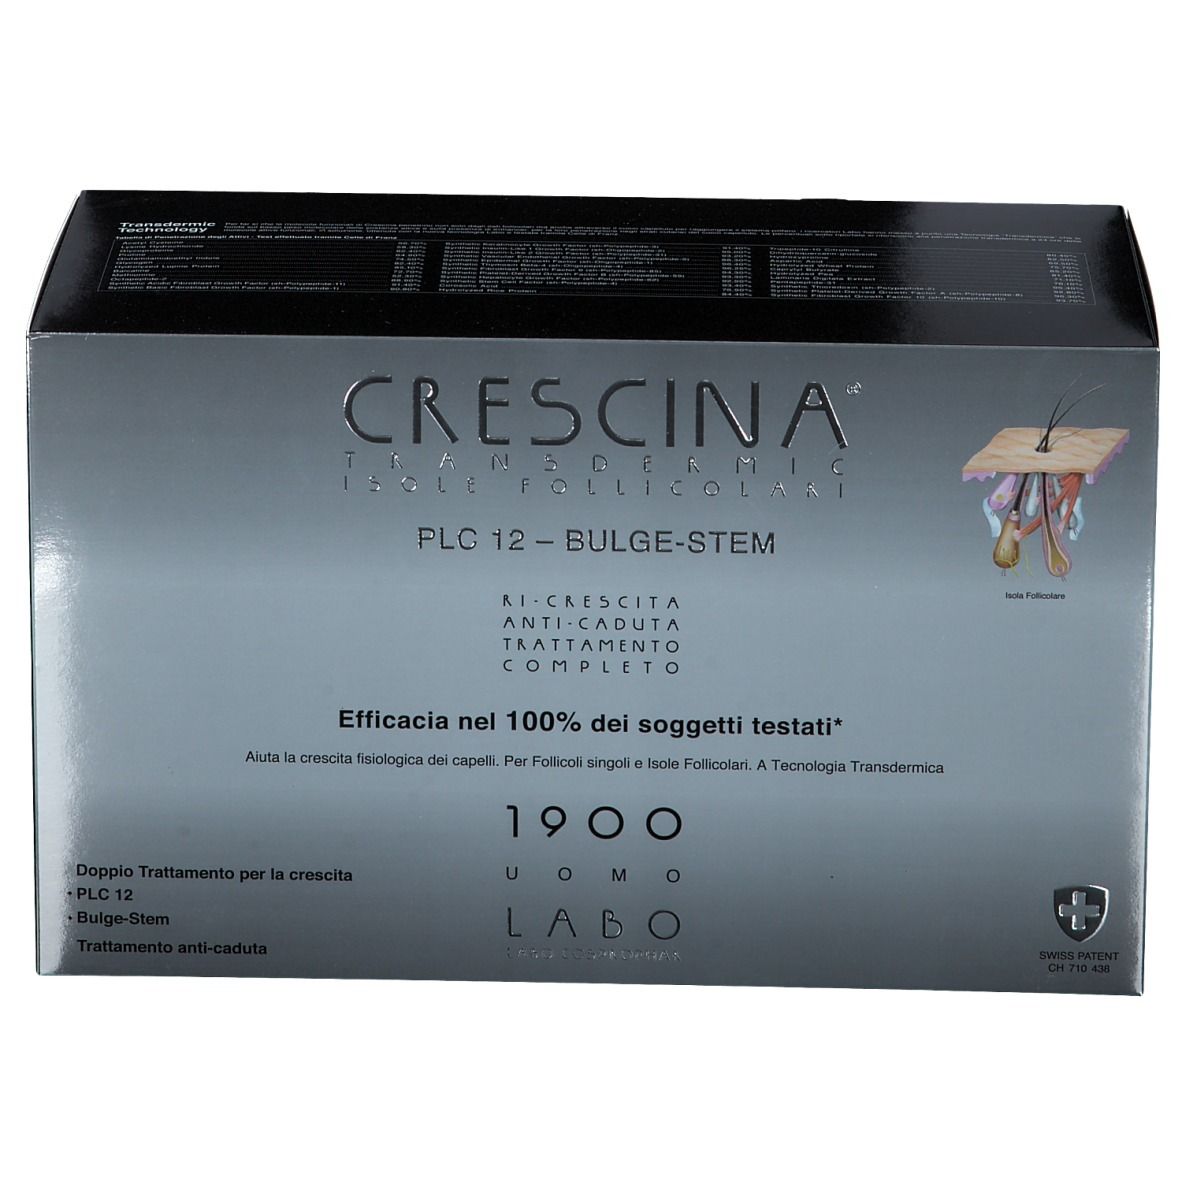 CRESCINA® Transdermic Isole Follicolari PLC12 Bulge-Stem 1900 Uomo